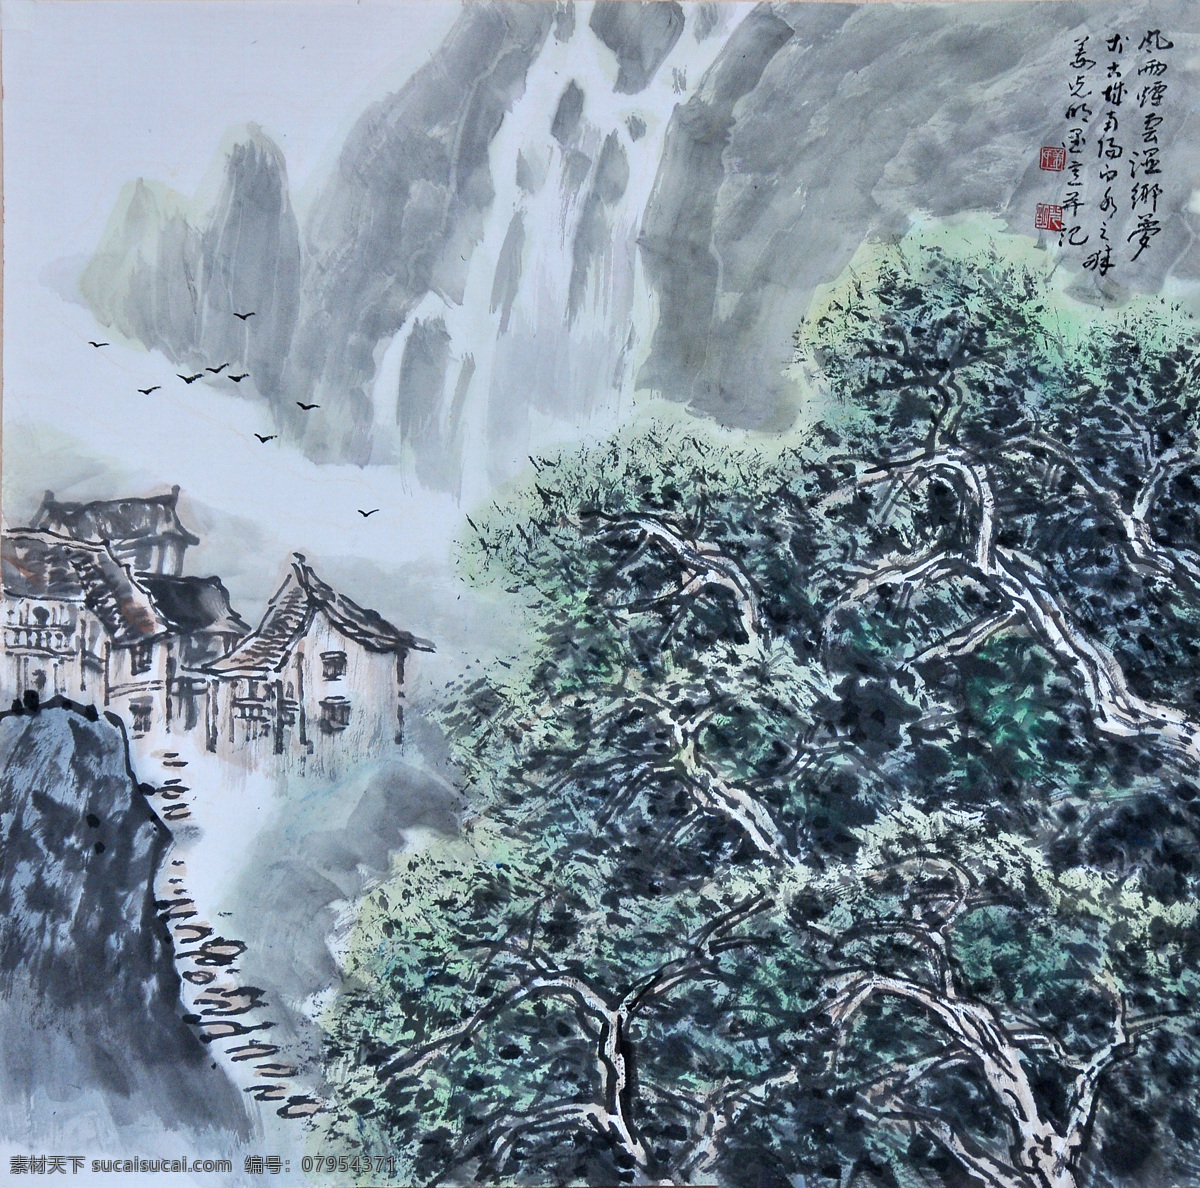 风雨烟云 姜光明 国画 山水 文化艺术 绘画书法 中国画 水墨画